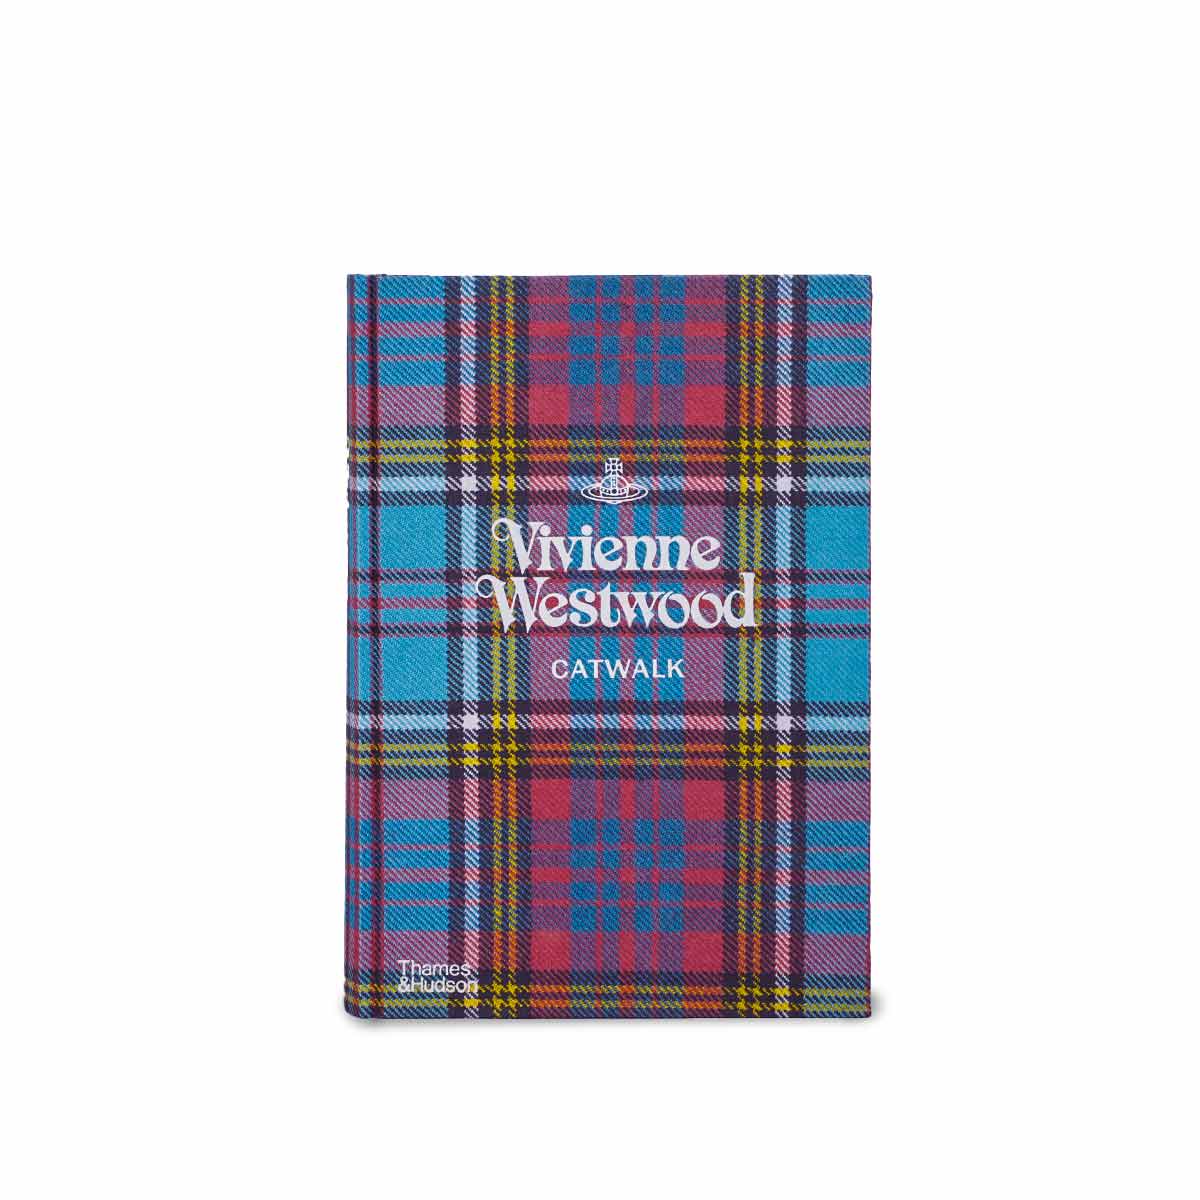 Buy Vivienne Westwood Catwalk Book online in India – Home4u